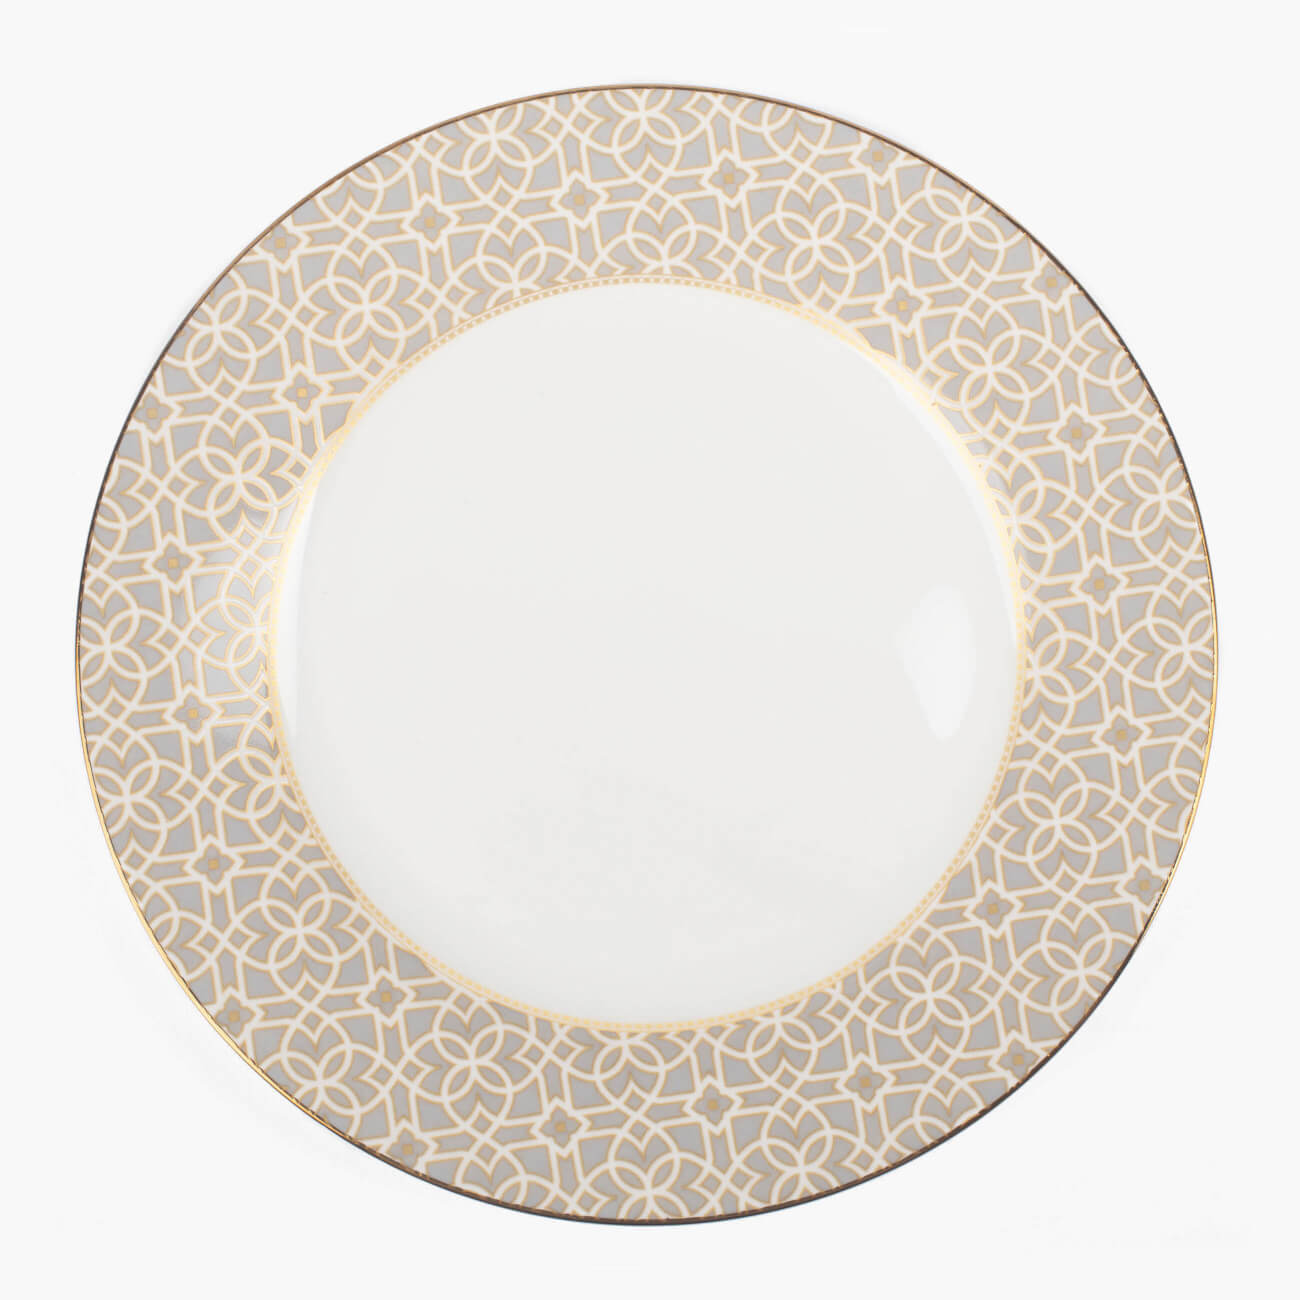 Тарелка десертная, 19 см, фарфор F, серая, с золотистым кантом, Орнамент, Liberty тарелка dudson камелот 22 9 см